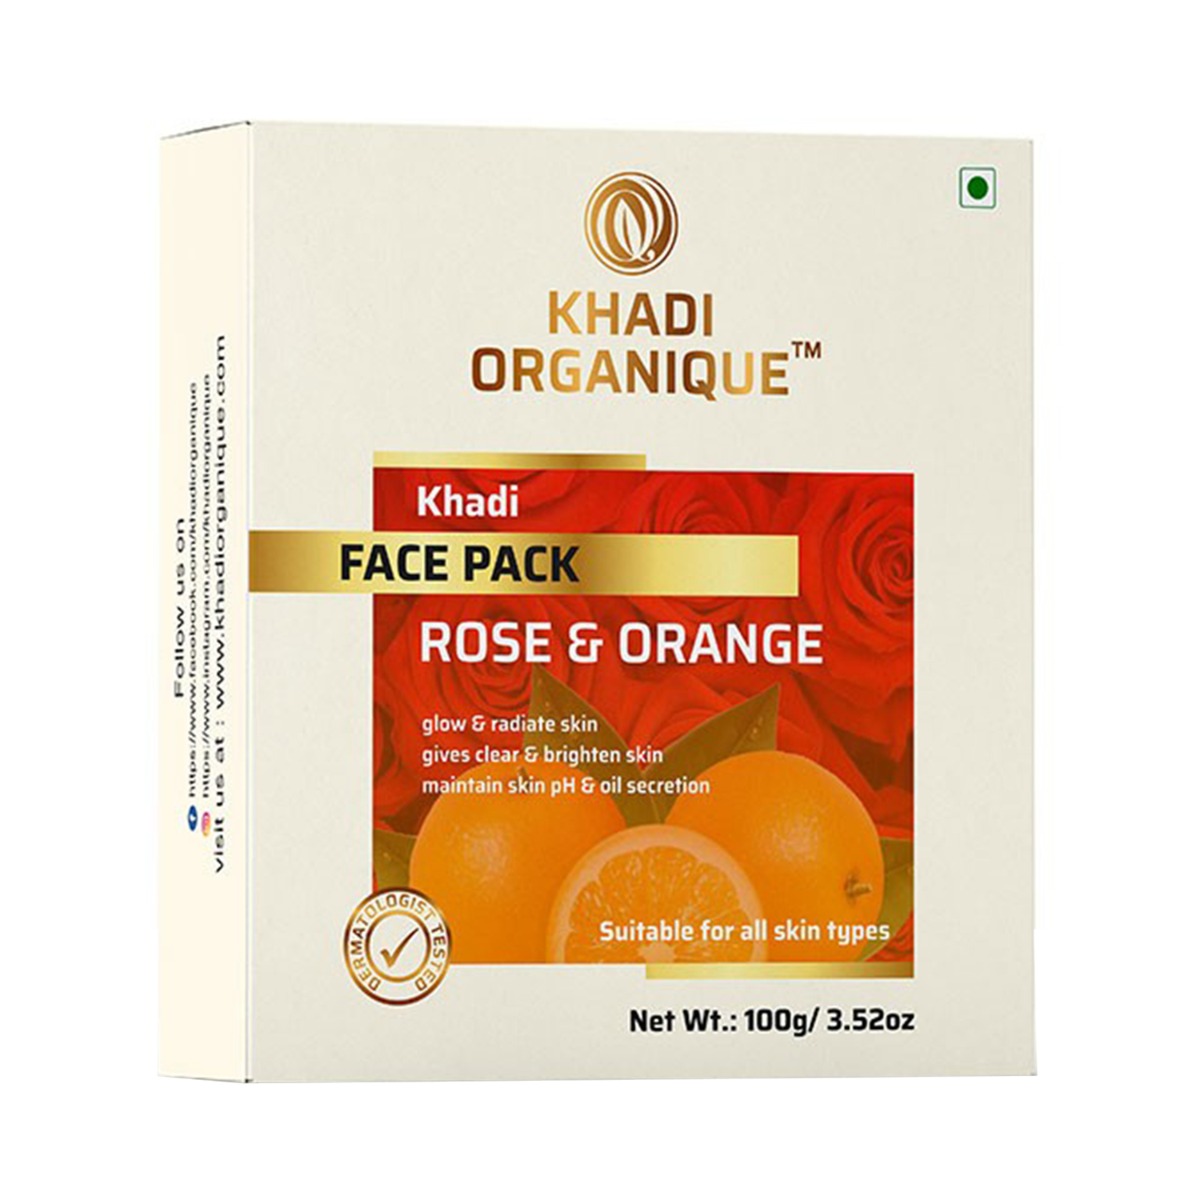 Khadi Organique Rose & Orange Face Pack, 100gm